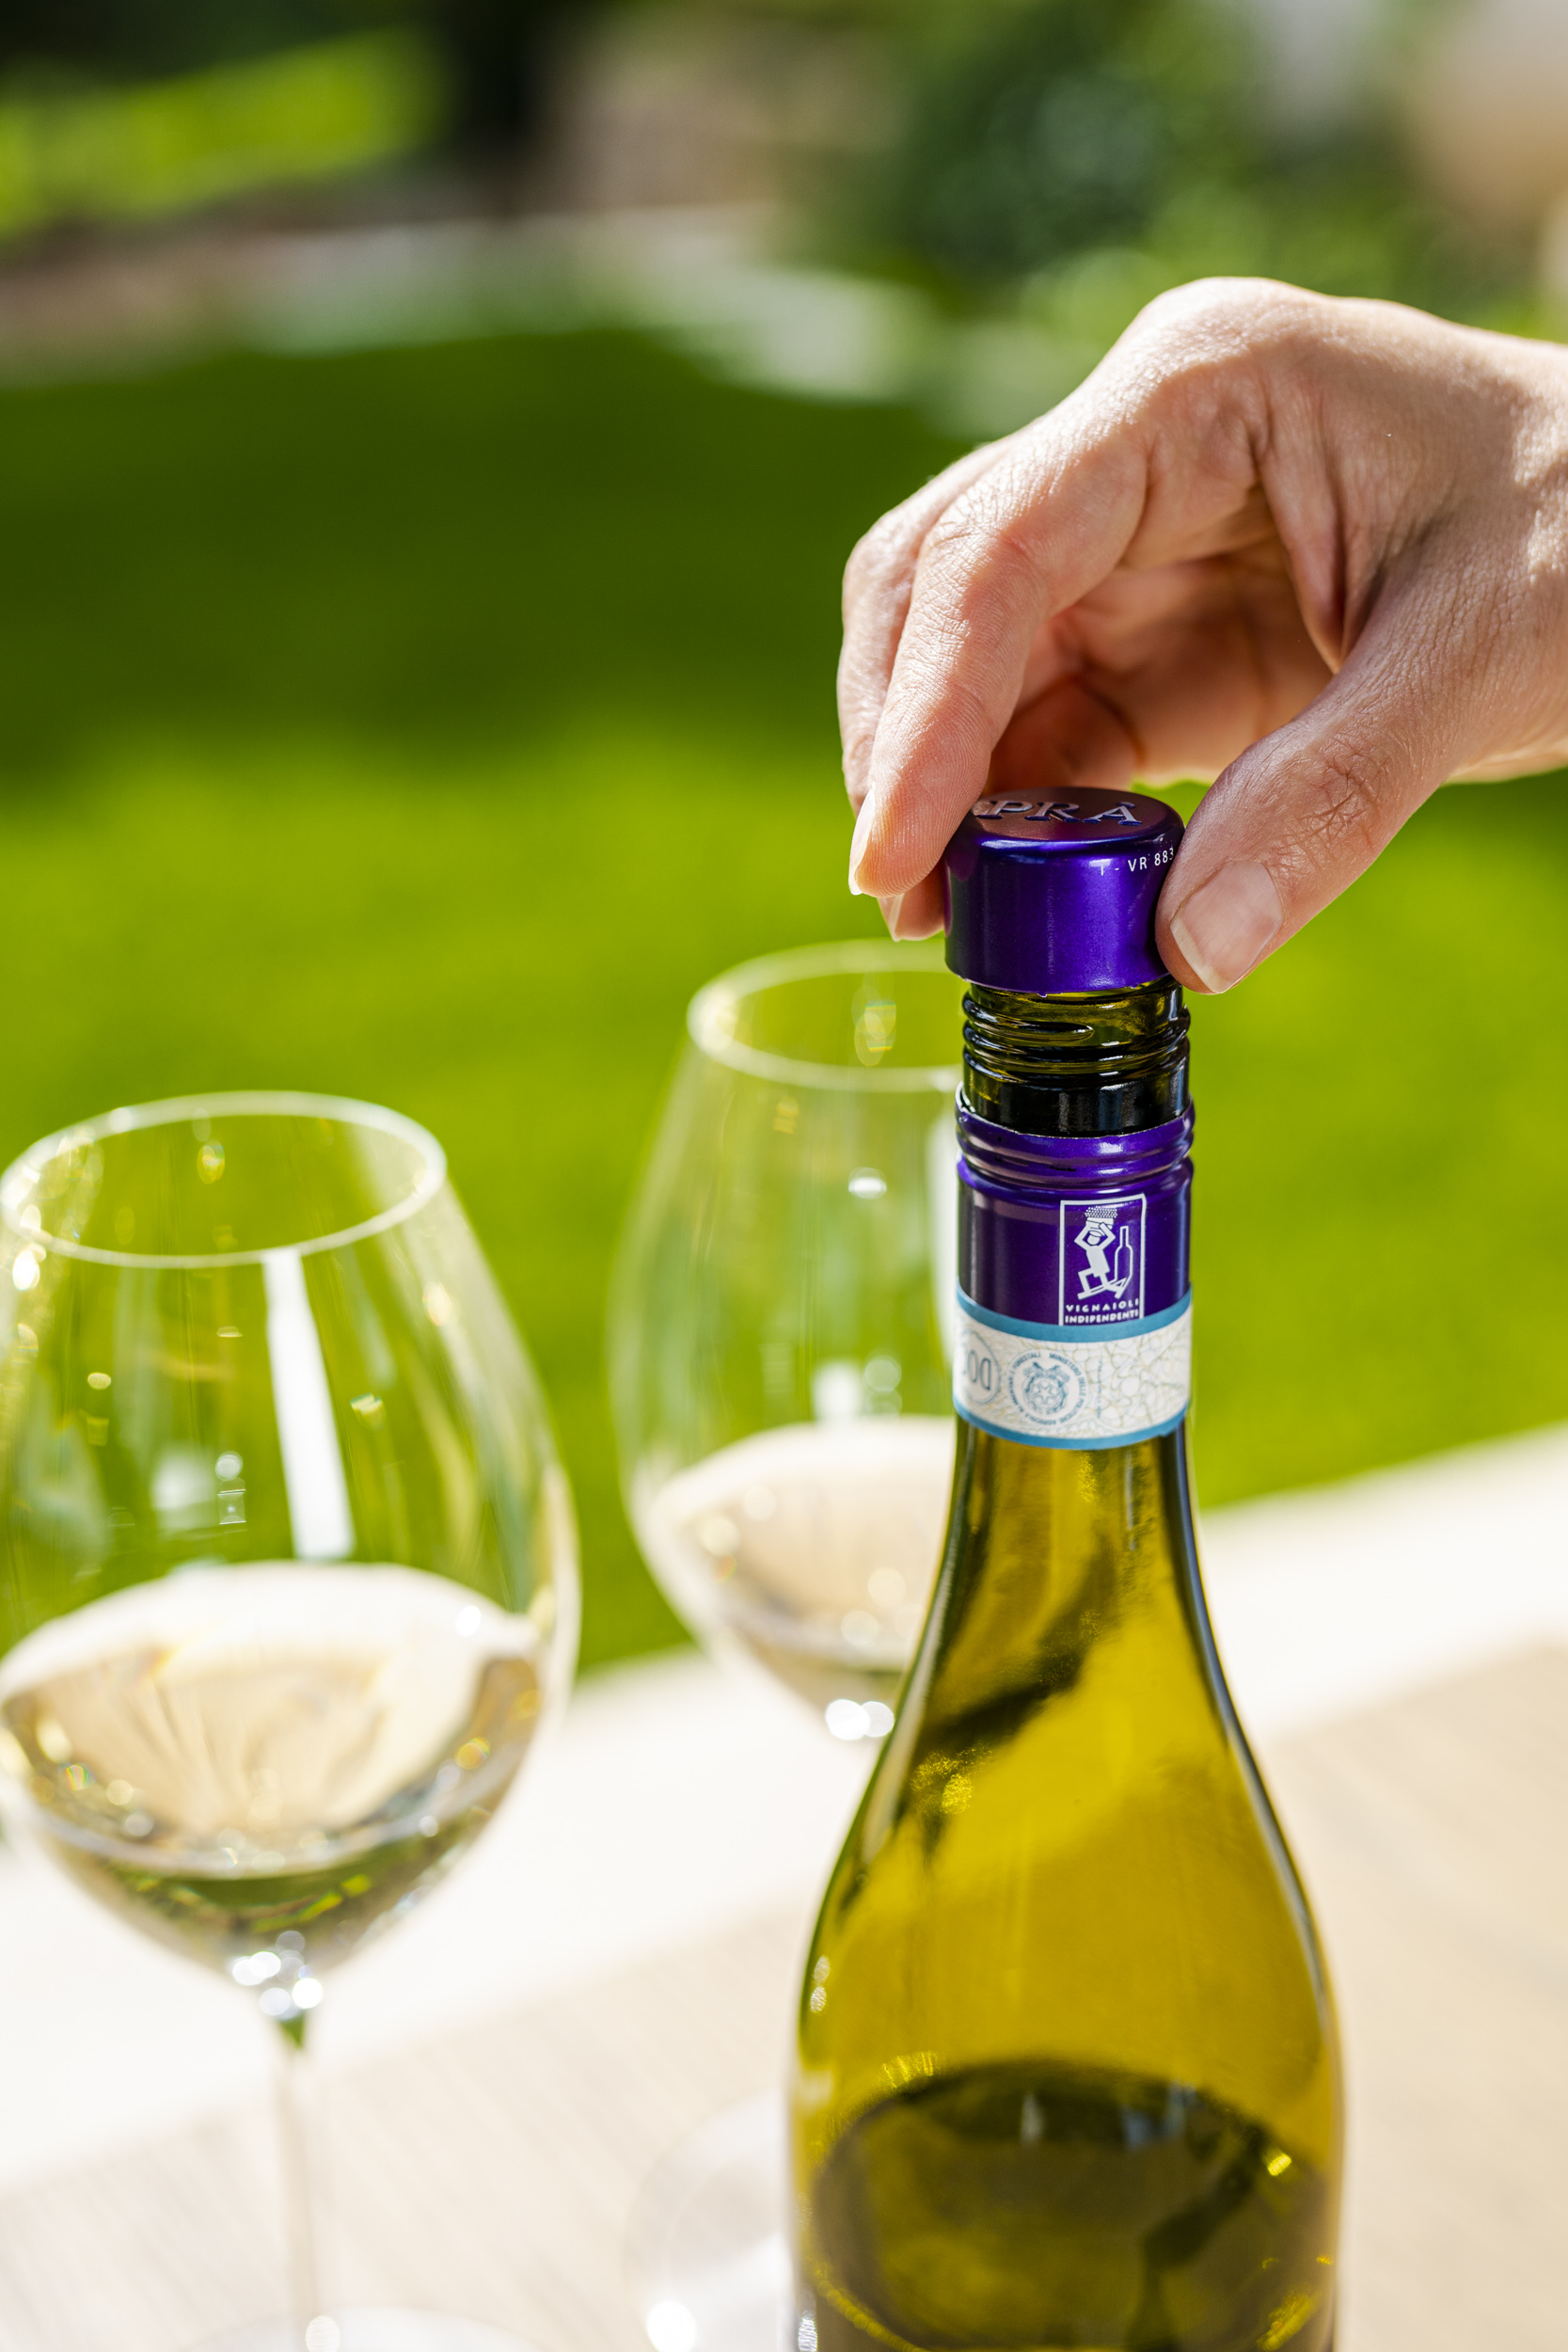 Nel mondo 4 bottiglie di vino su 10 hanno il tappo a vite. In Italia  nascono “Gli Svitati” - WineNews